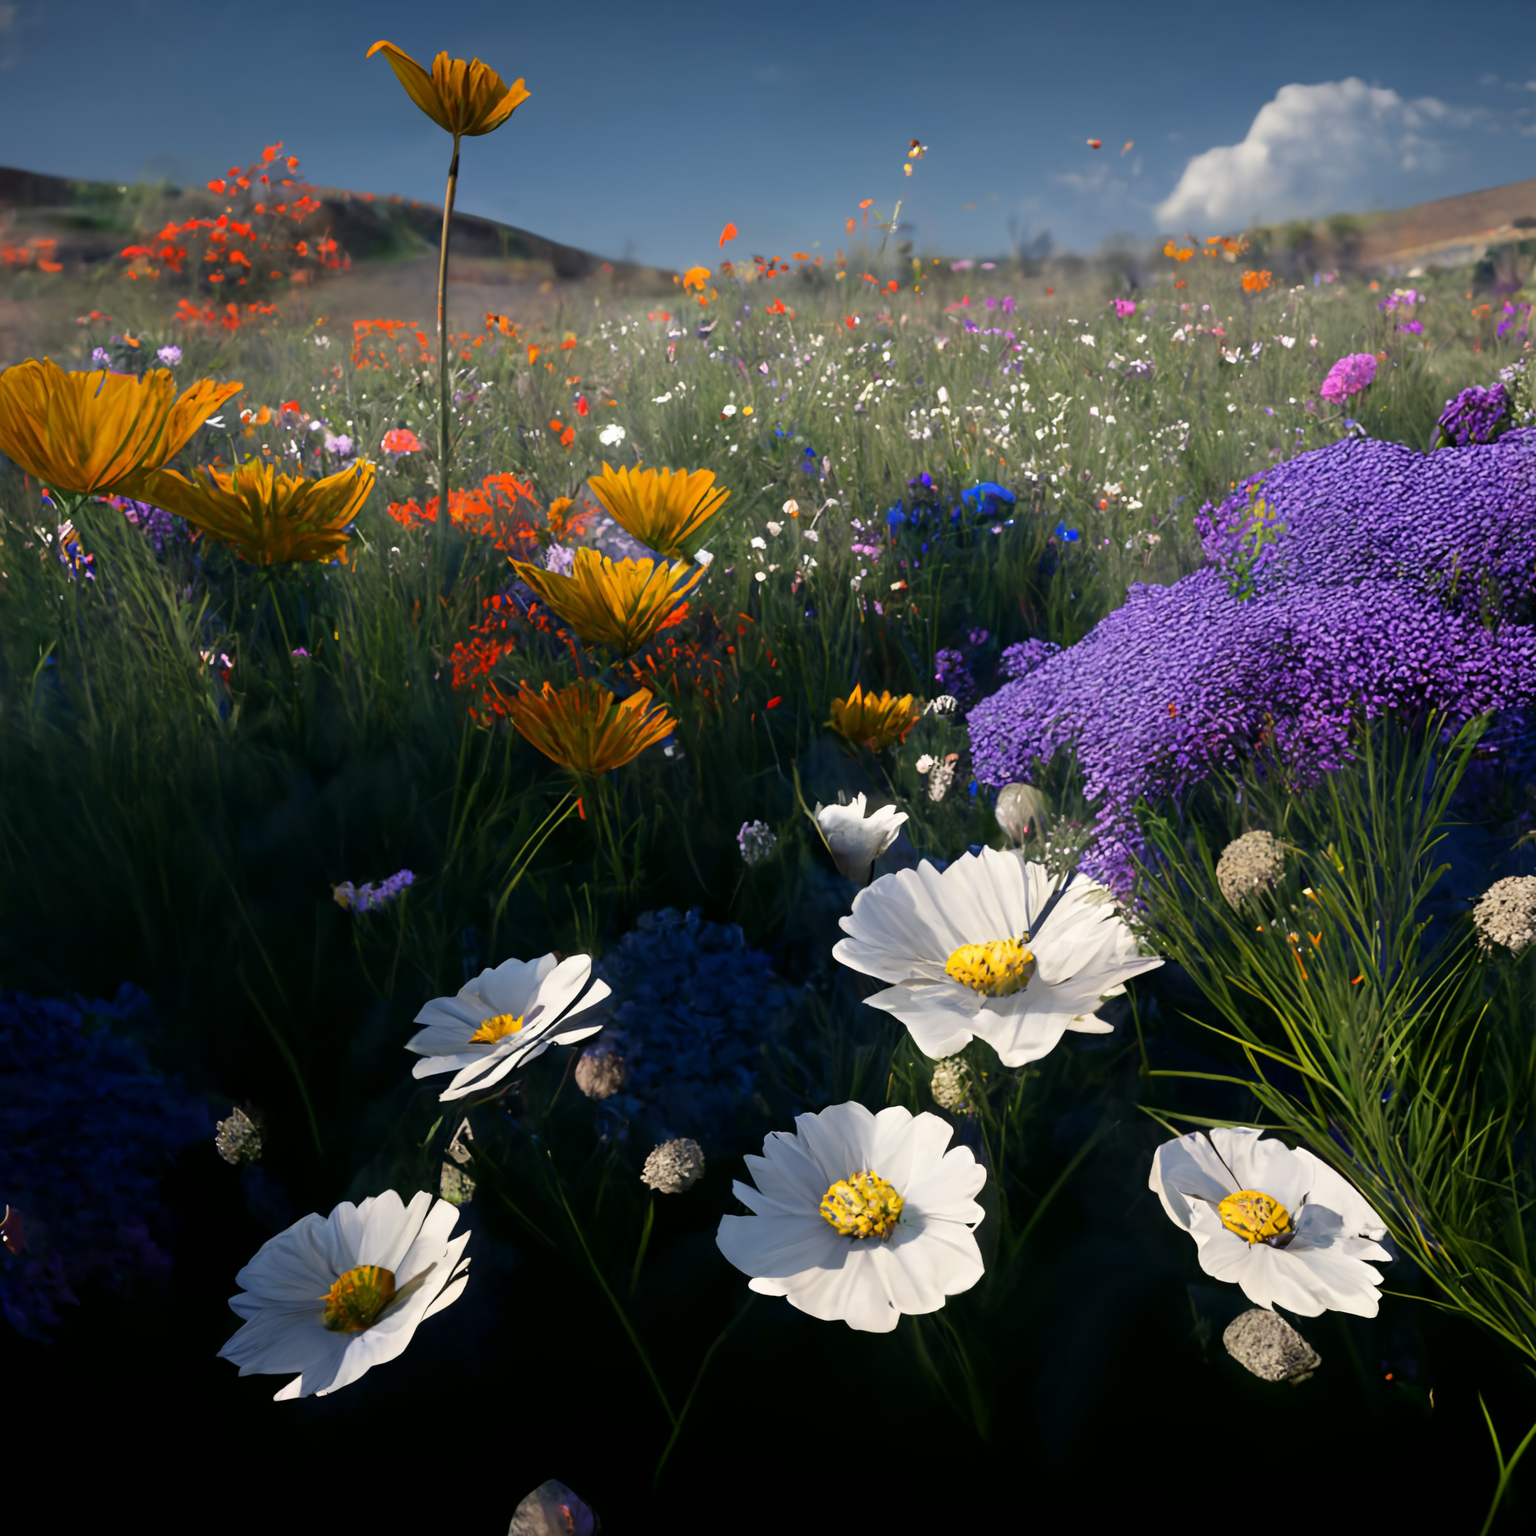 Field of flowers 